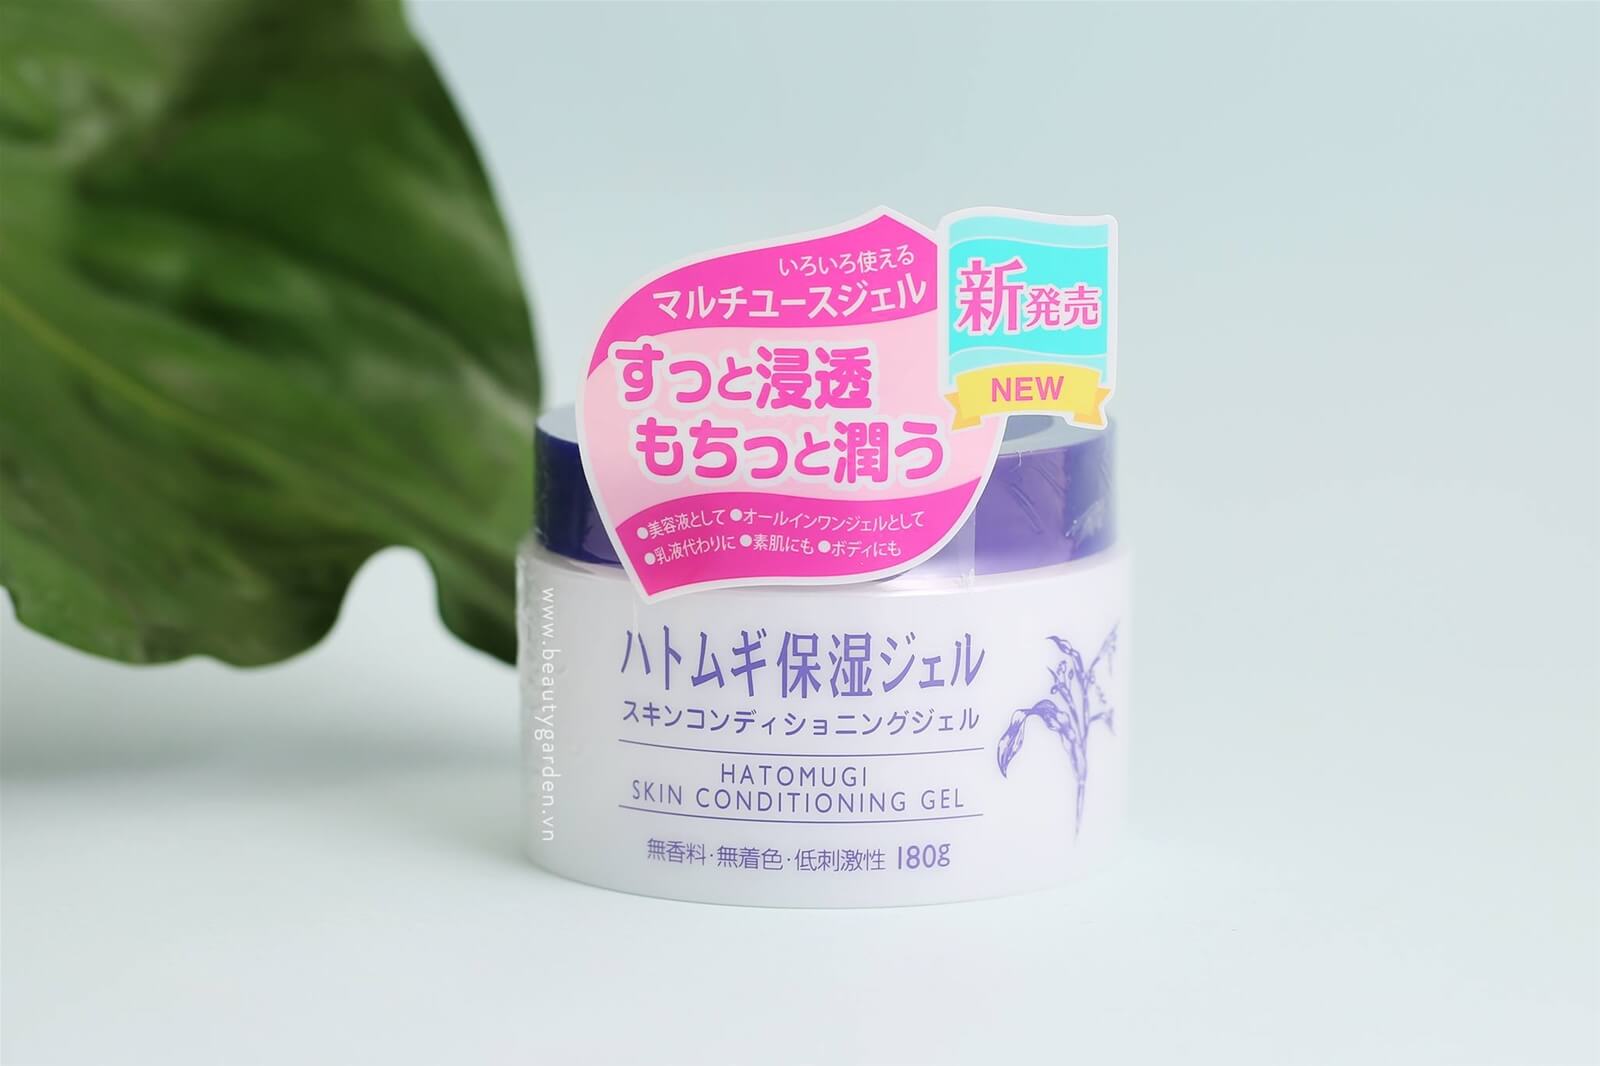 Kem dưỡng ẩm Naturie Hatomugi Skin Conditioning Gel với diện mạo mới